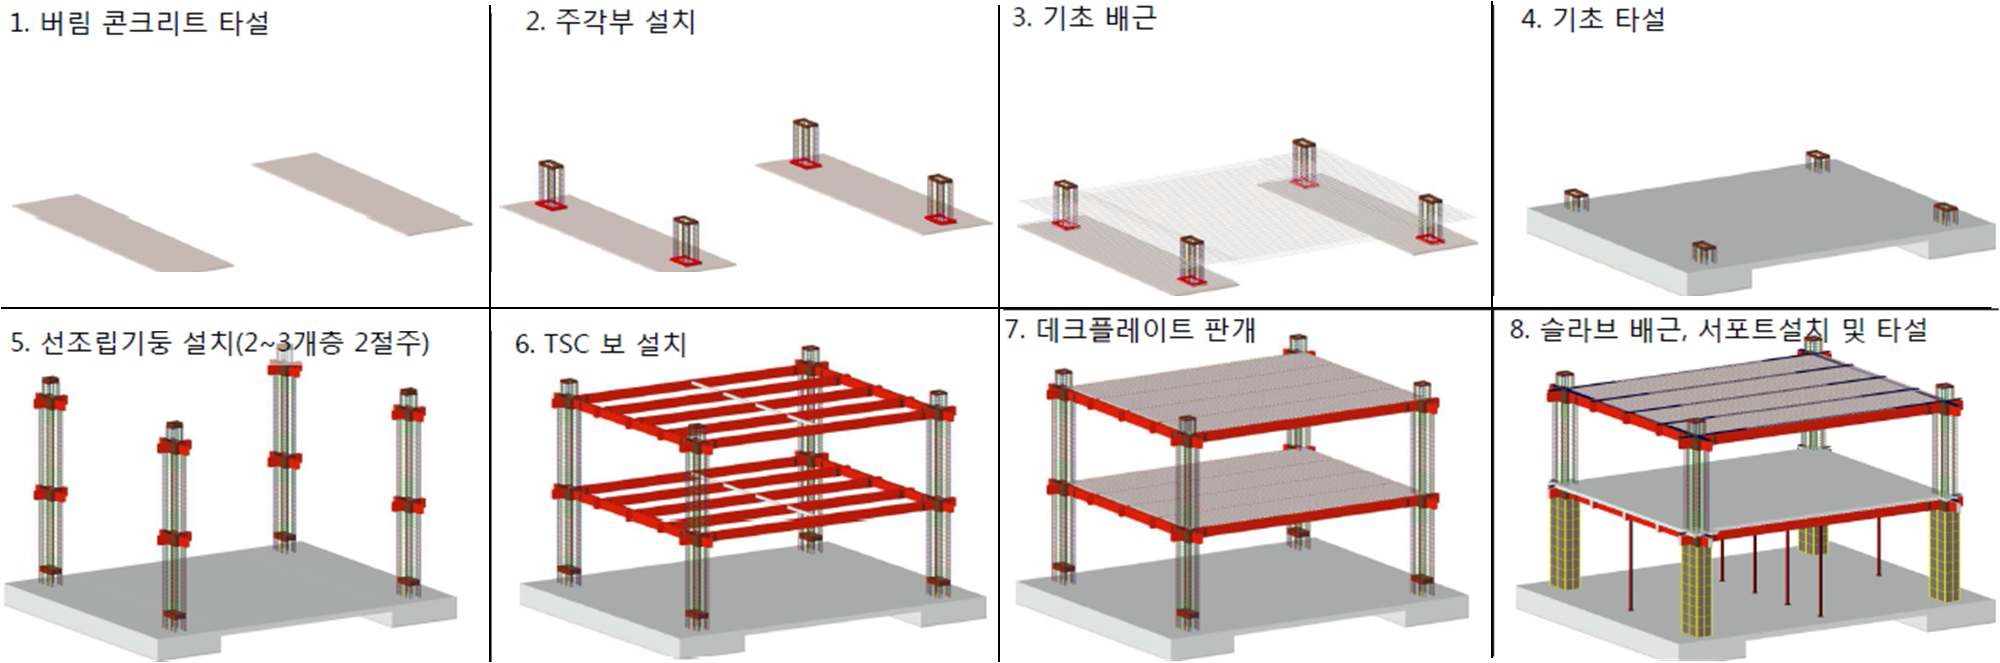 철근 선조립 공법의 시공 절차(선조립 철근 기둥 + TSC 합성보, 센구조)